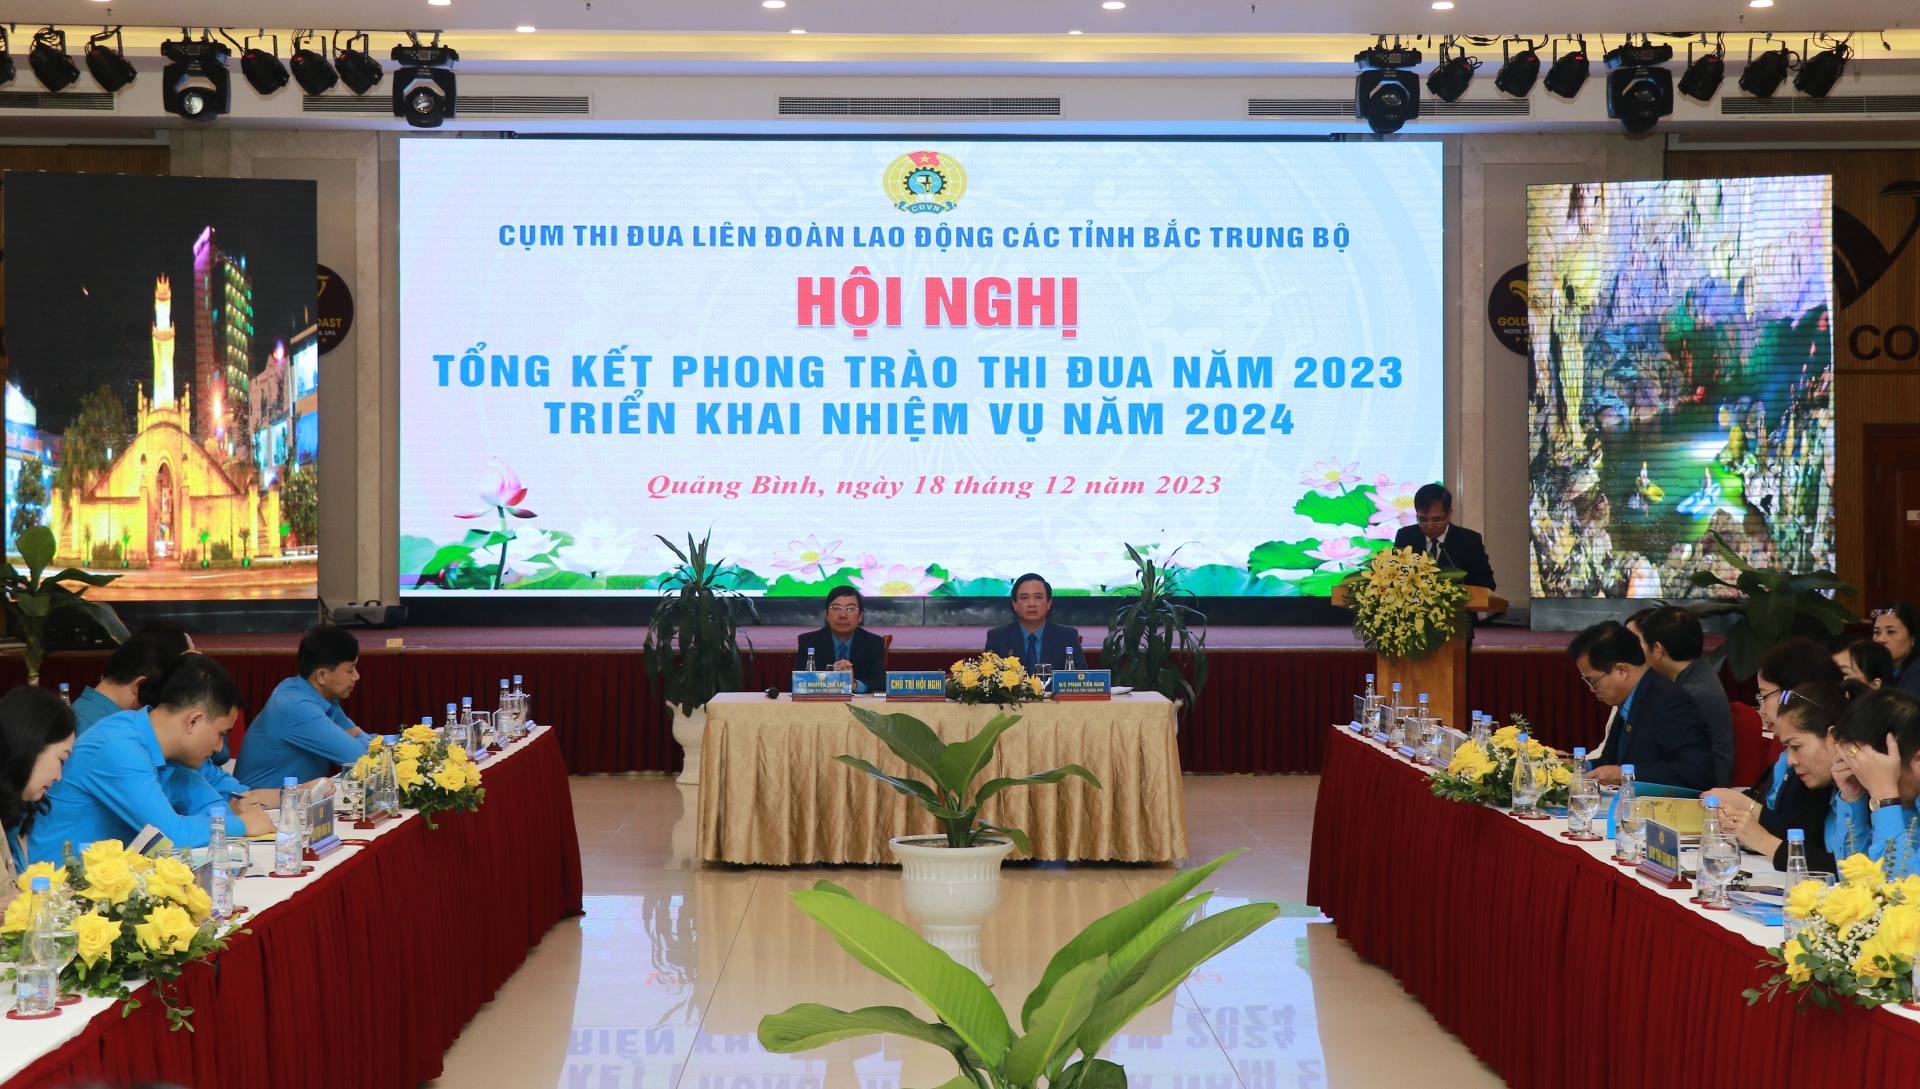 Cụm thi đua LĐLĐ 6 tỉnh Bắc Trung Bộ tổng kết năm 2023